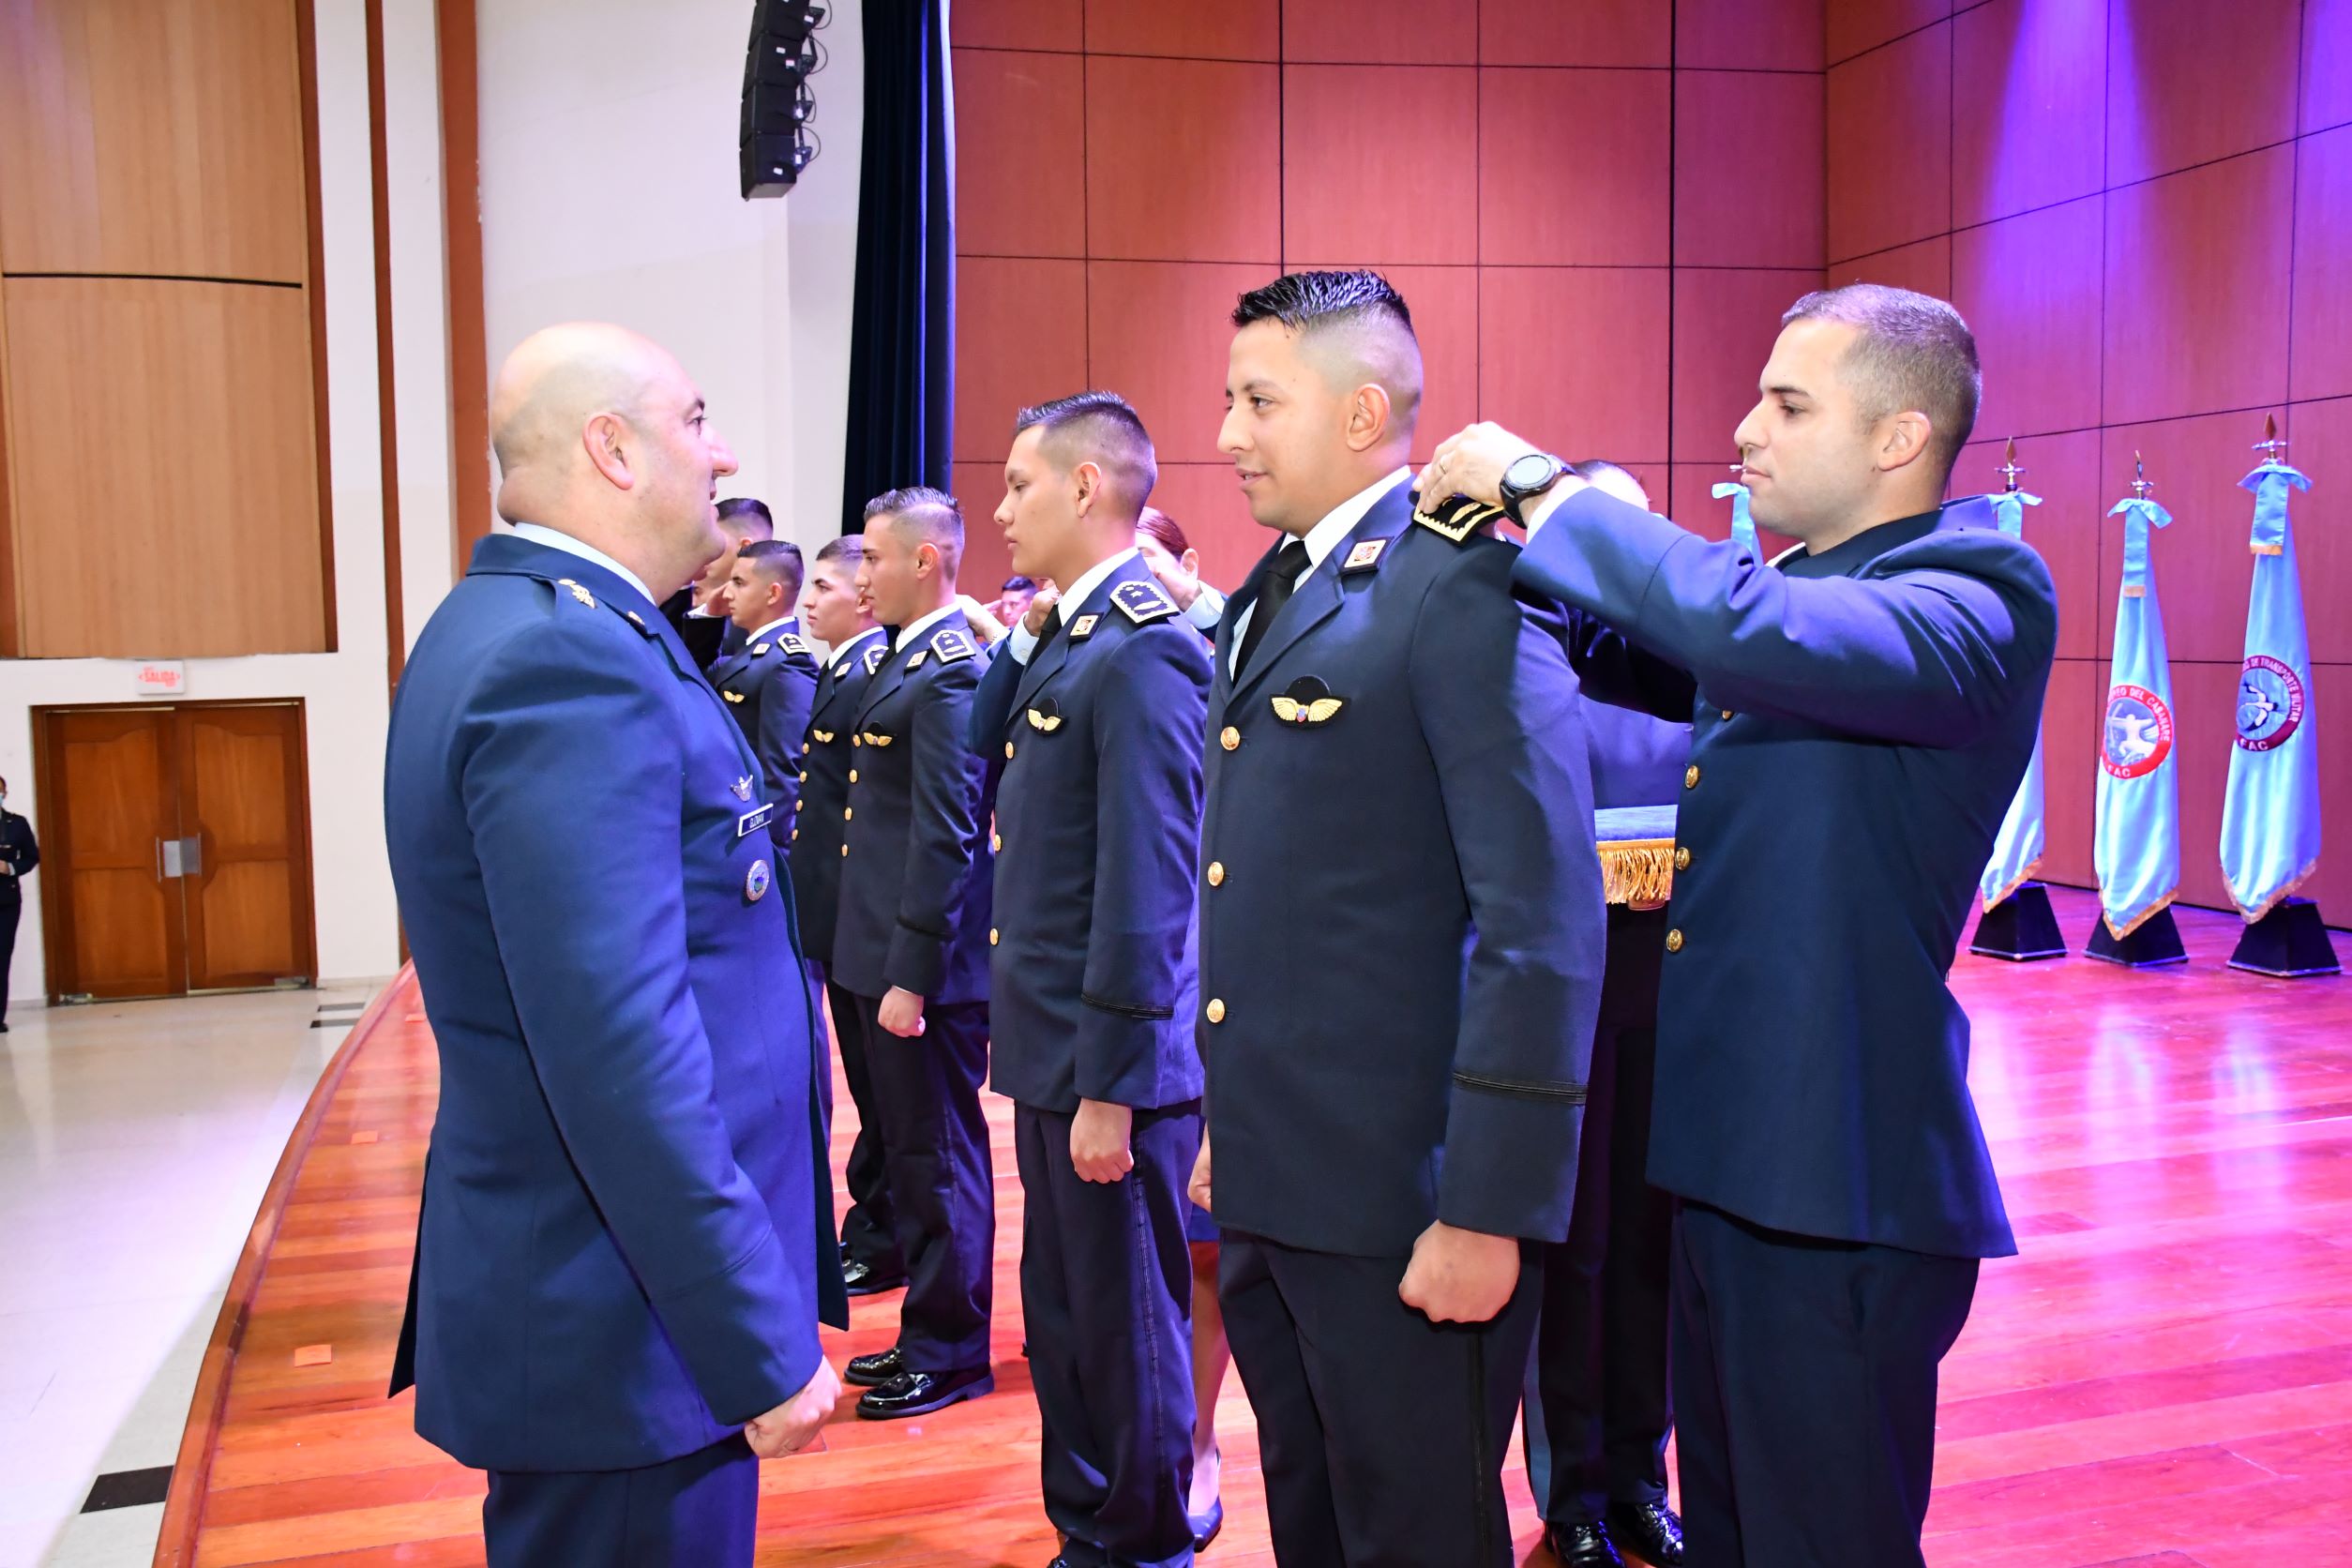 ¡Felicitaciones a los nuevos Subtenientes de la Fuerza Aérea Colombiana!